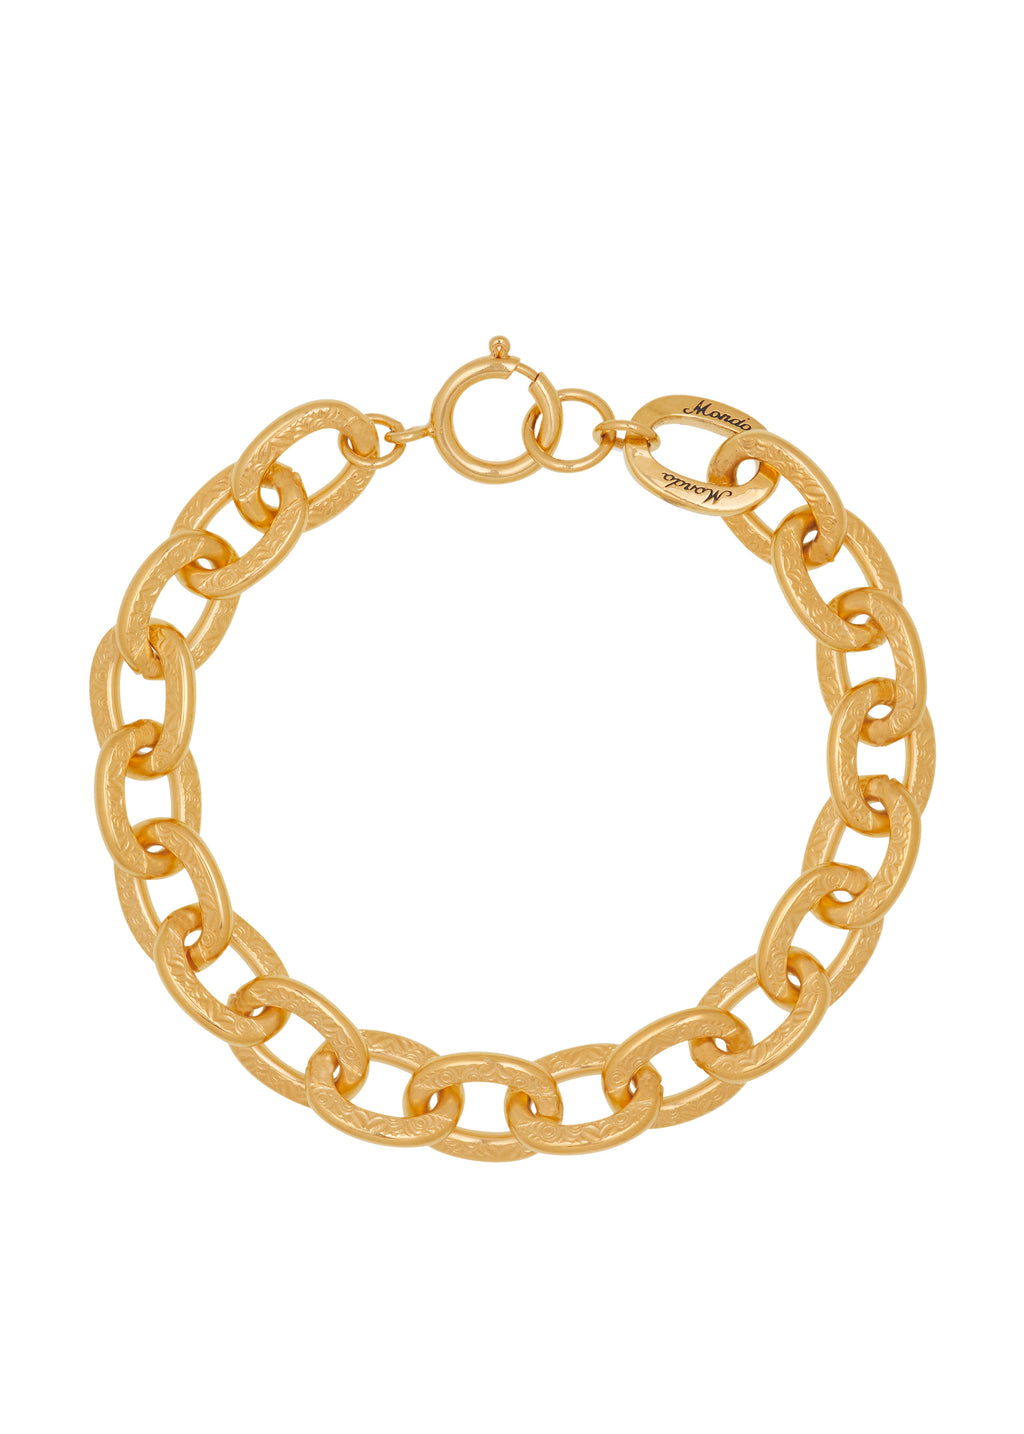 Scroll Chain Bracelet in Gold